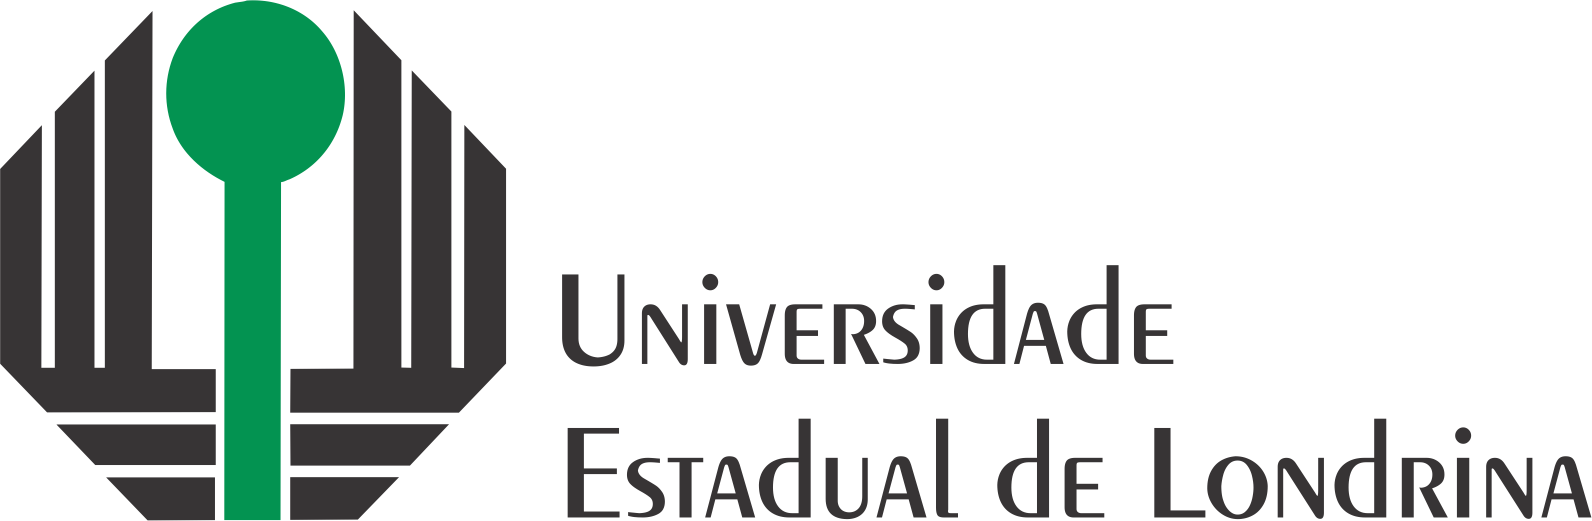 Universidade Estadual De Londrina UEL 2017 